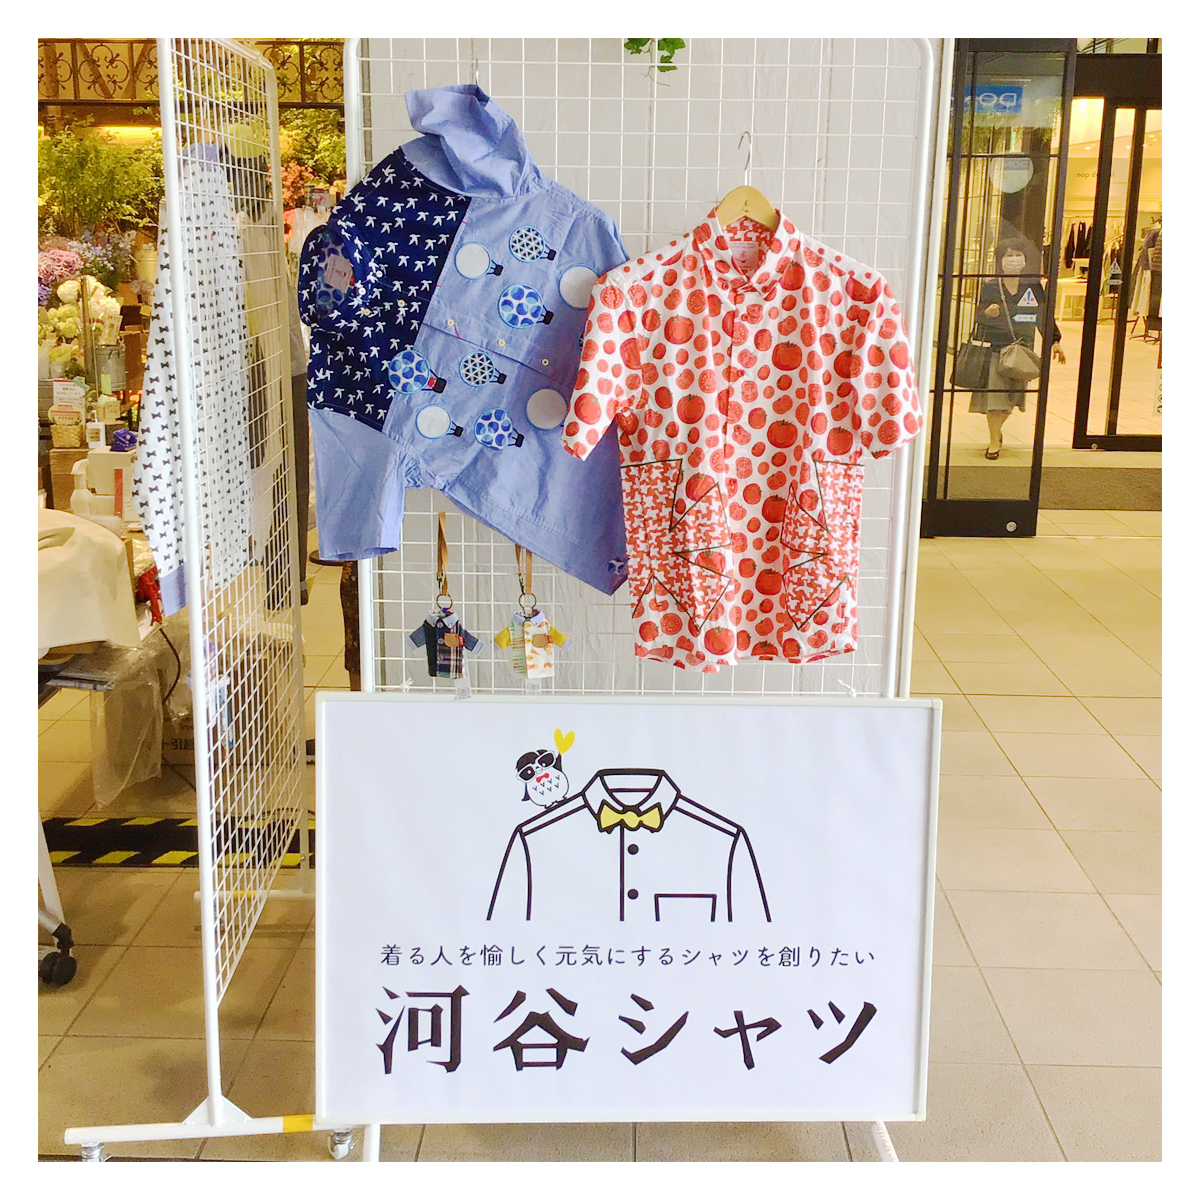 【New】あべのハルカス近鉄本店(大阪)にPOPUPSHOPがオープンしました♪